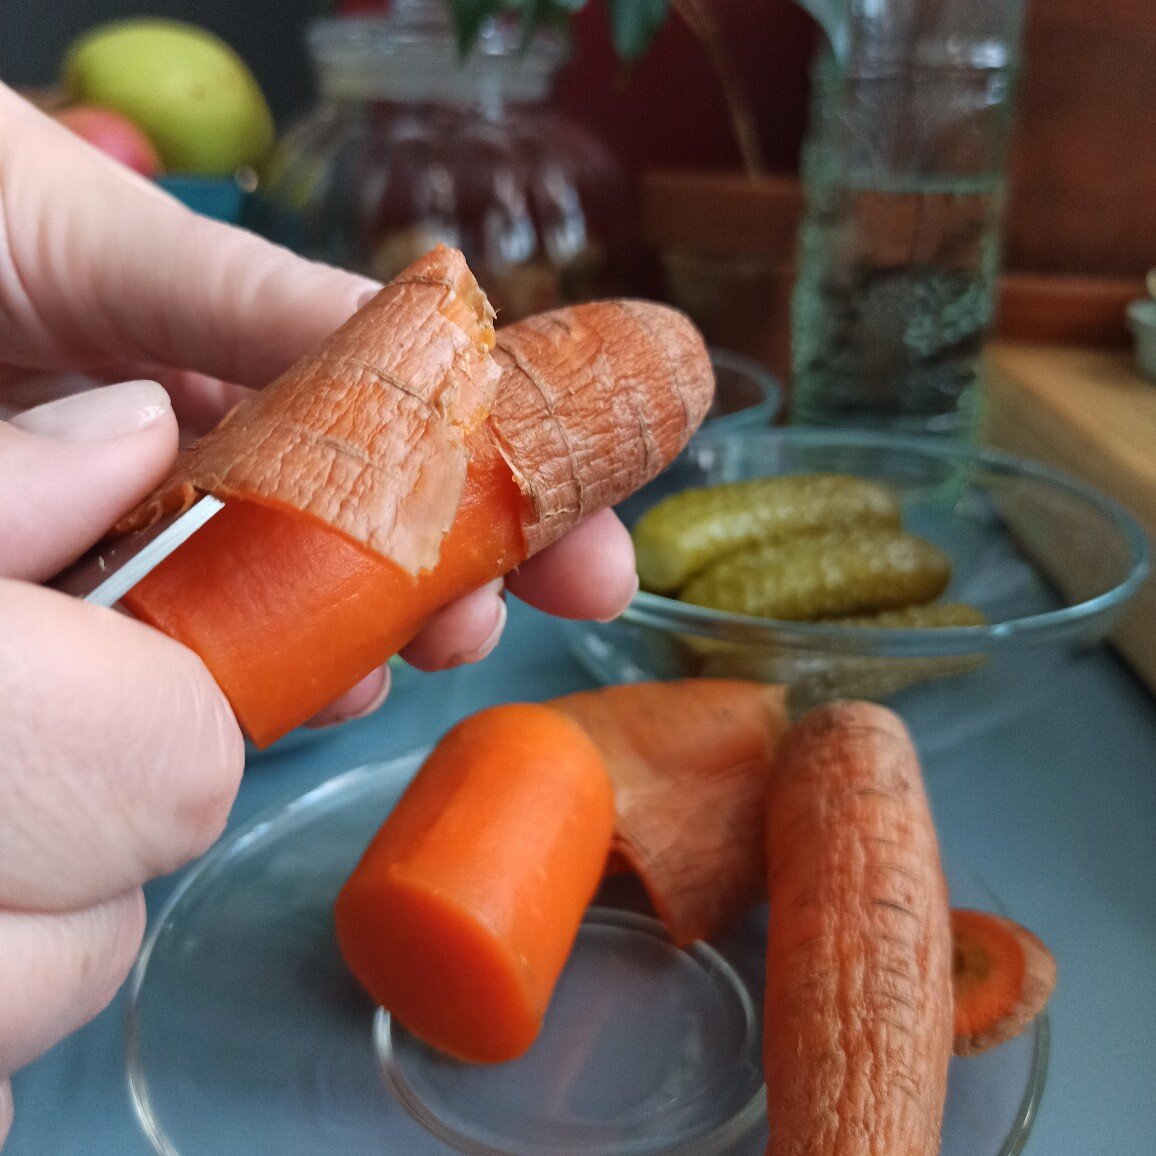 "По волокнам" чистить морковку намного проще.